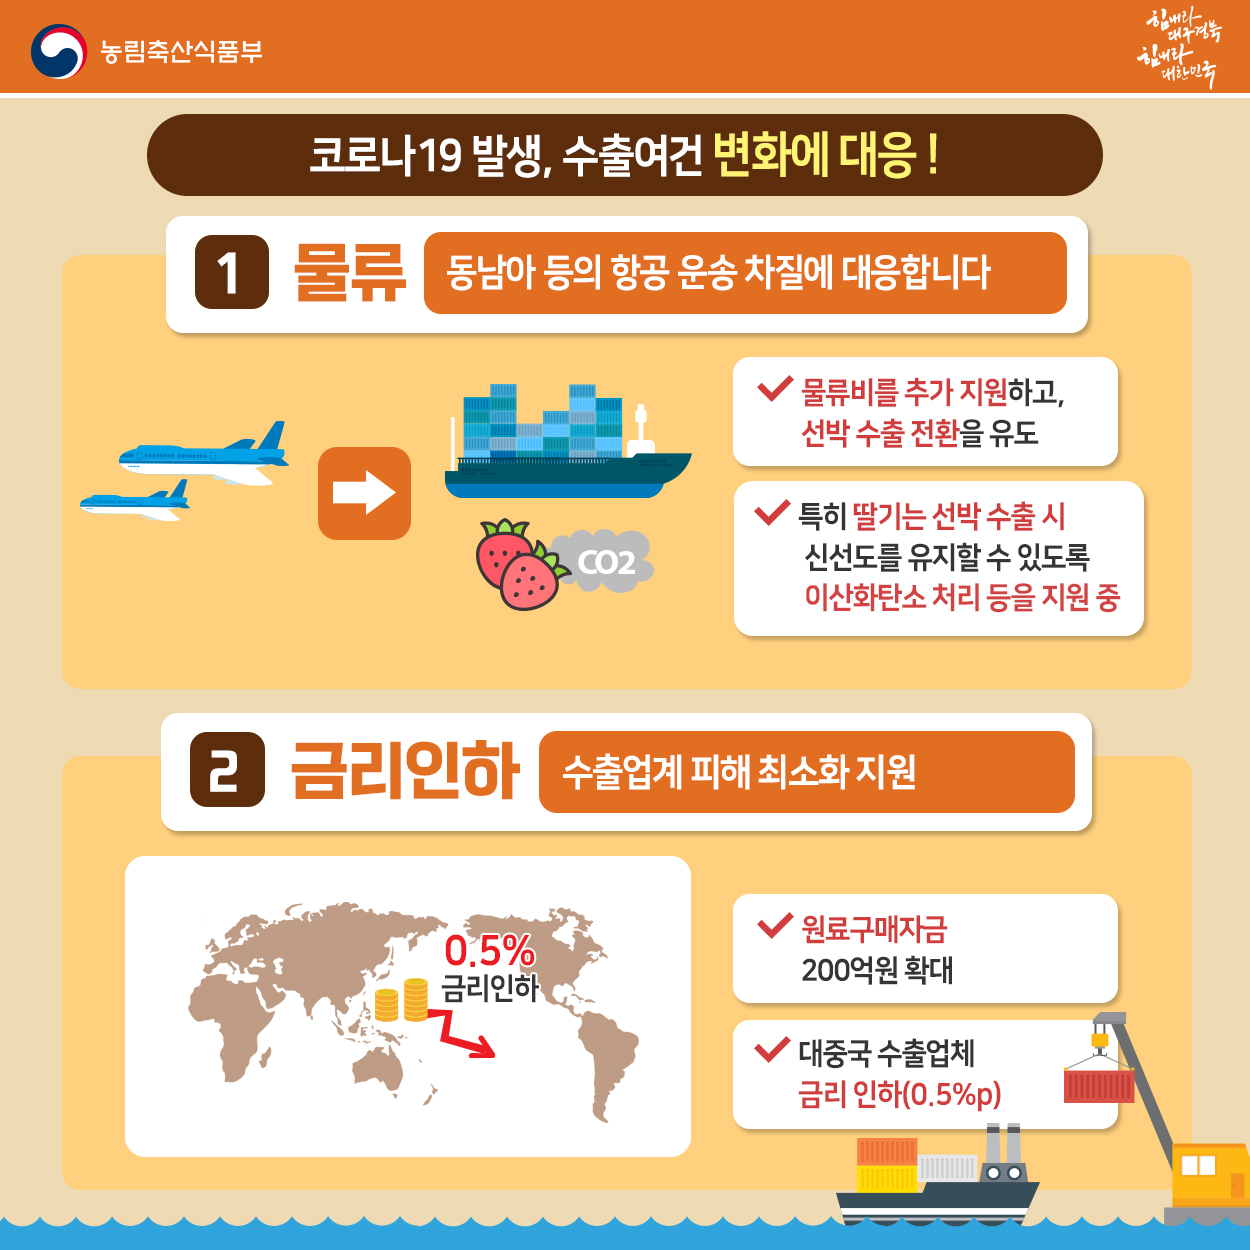 2020년 1분기 농식품 수출 성장 농식품부_카드뉴스_1분기수출성장_5_200410.jpg